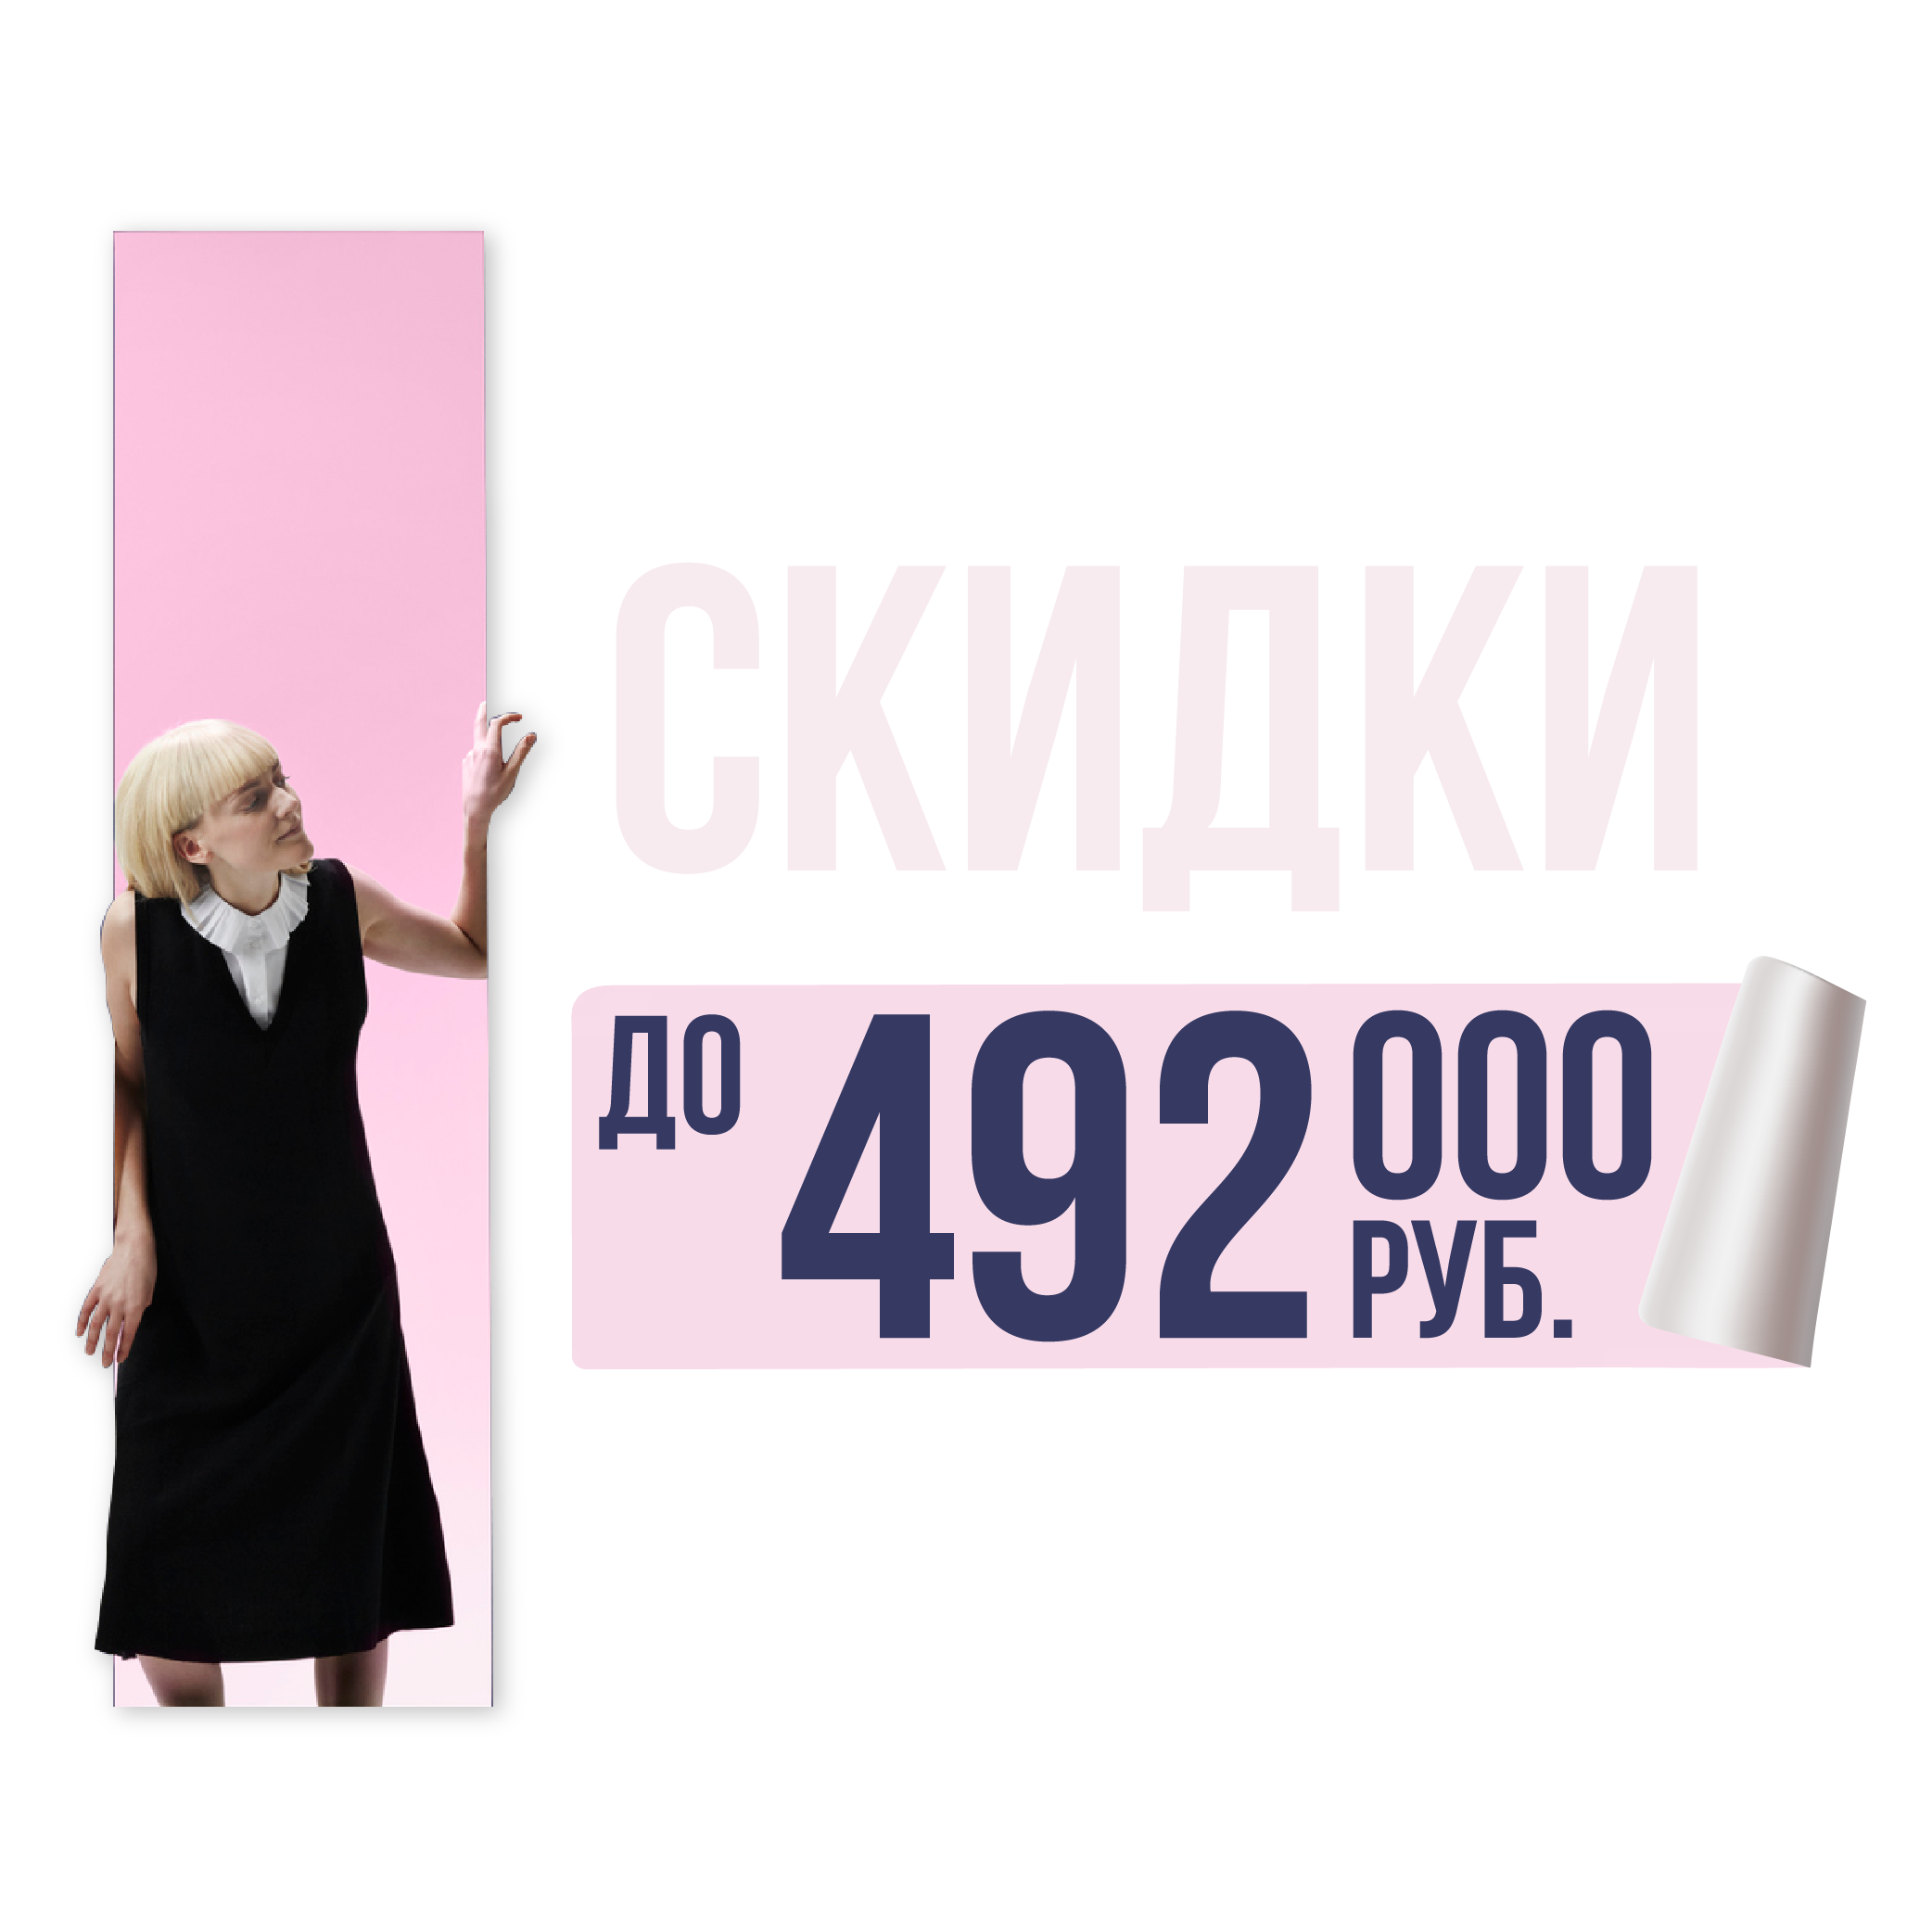 Скидка на квартиры до 492 000 руб.